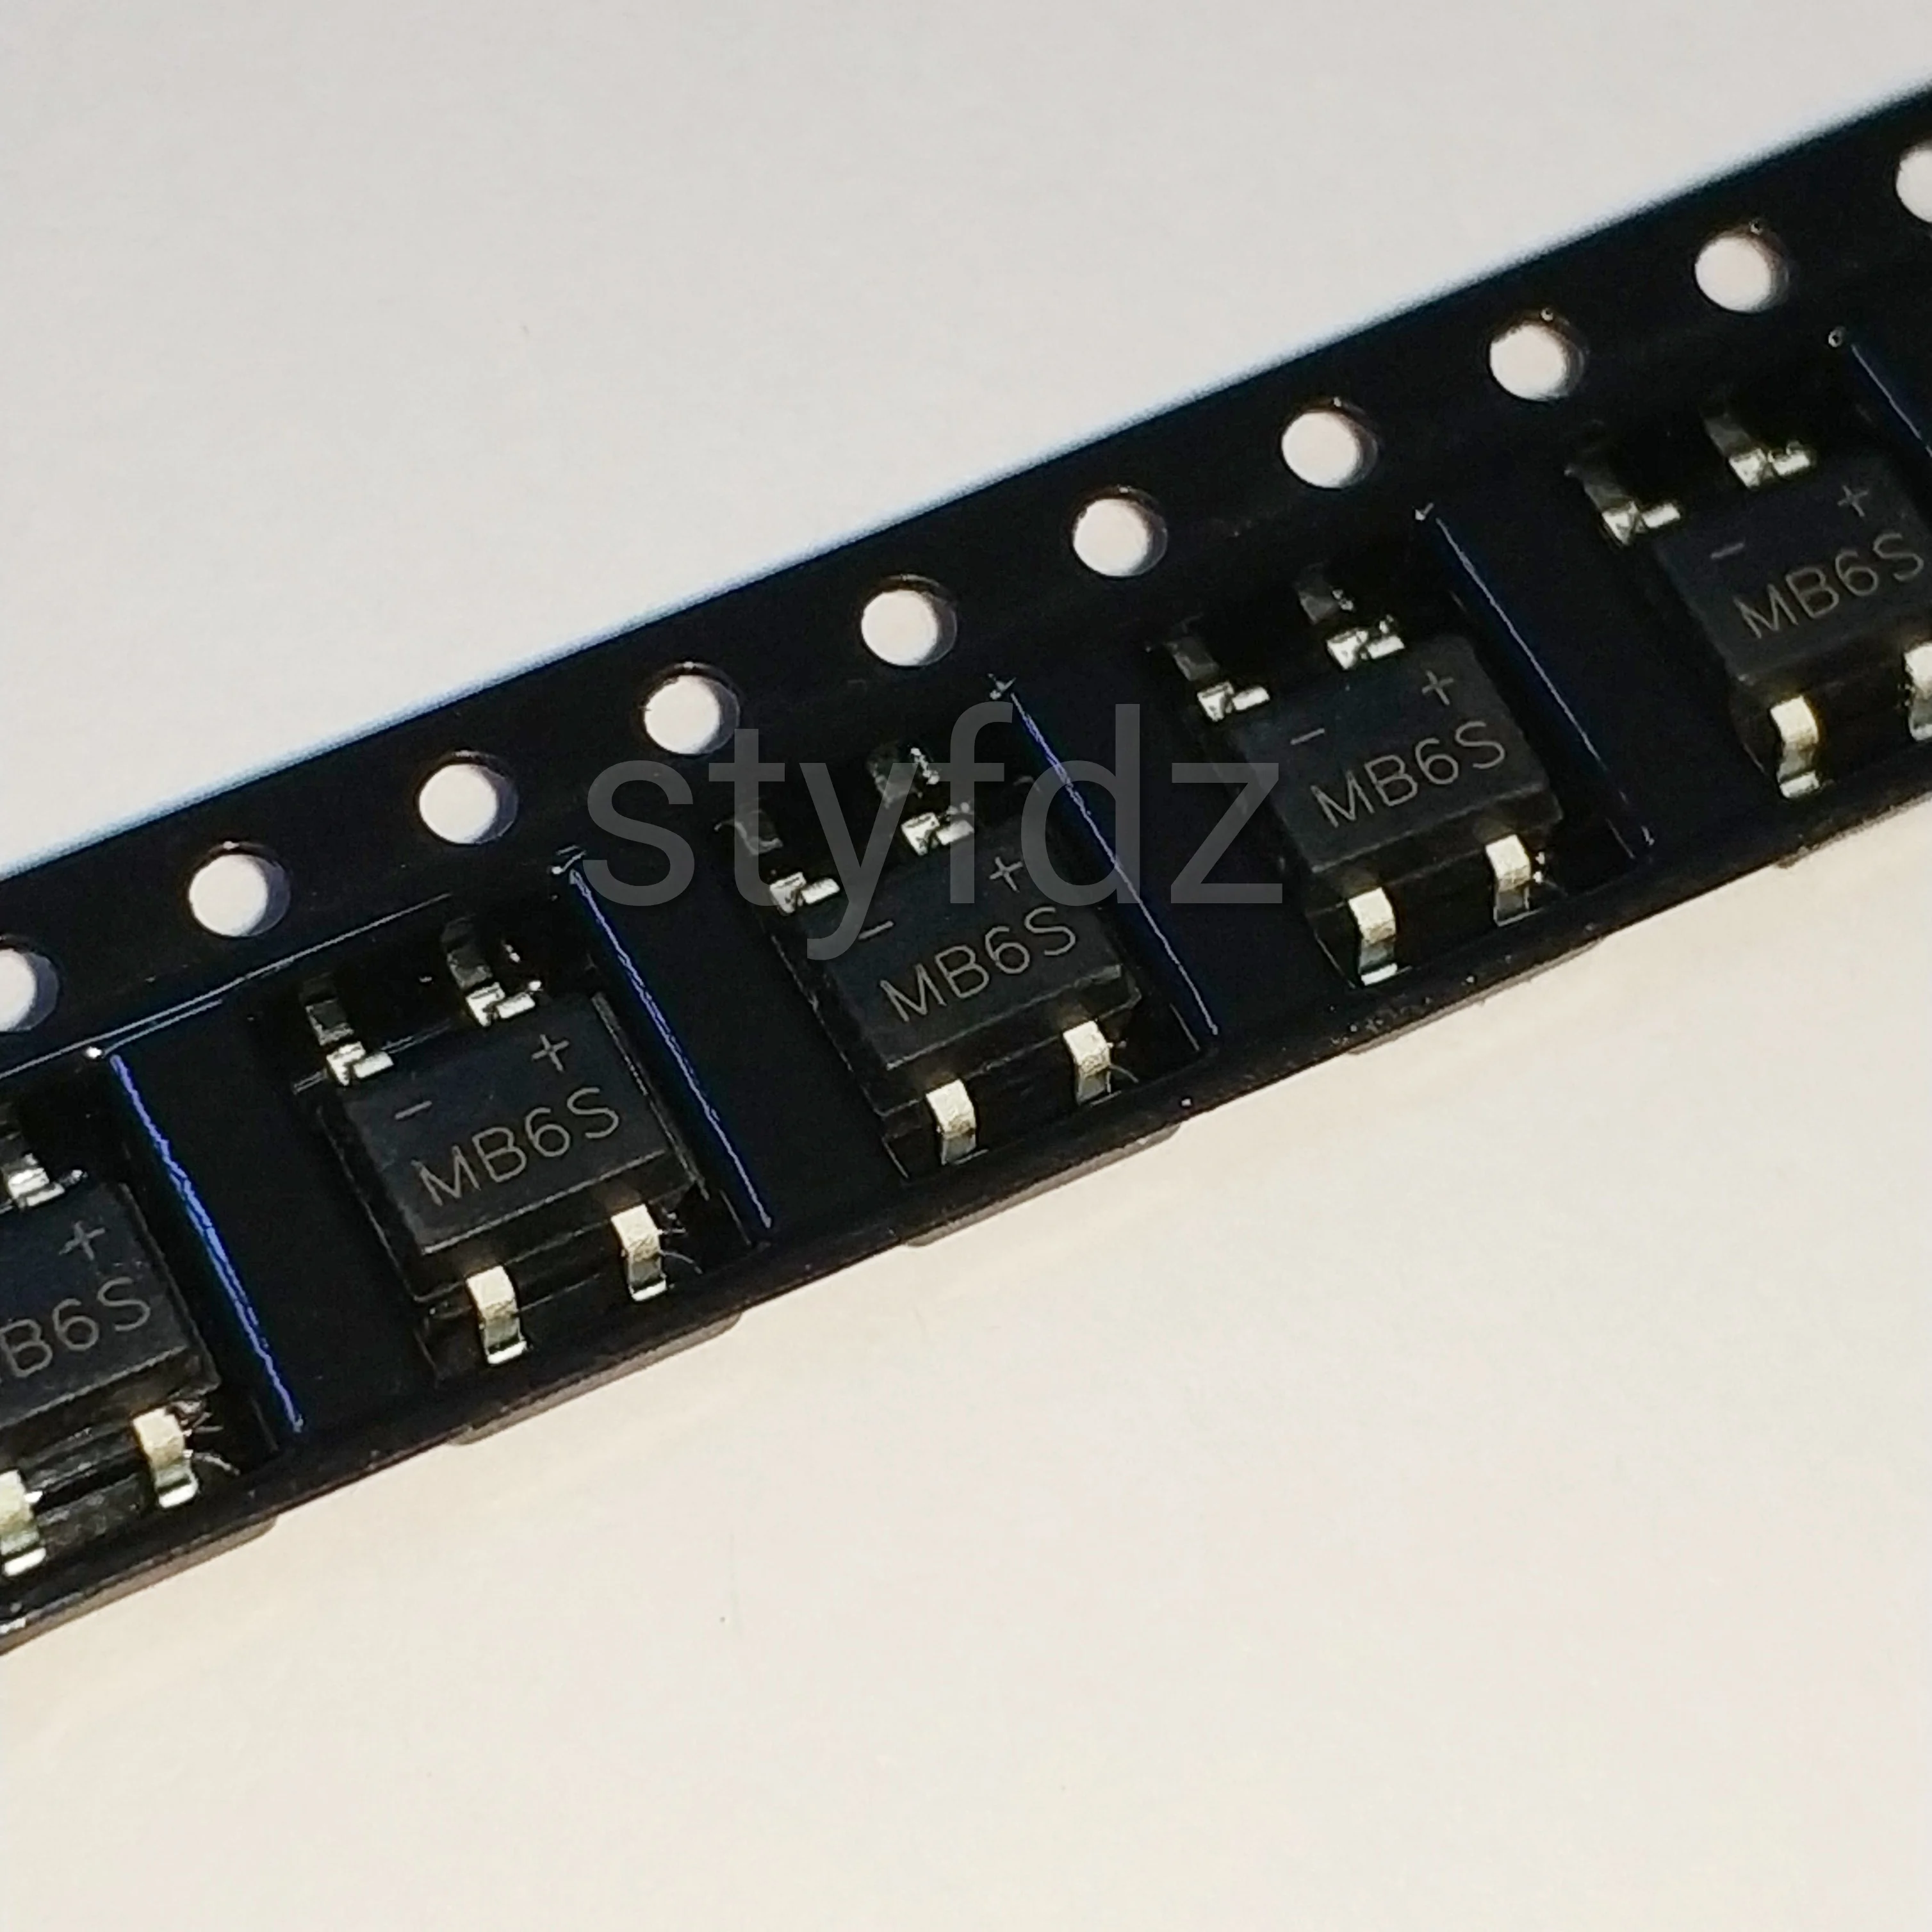 

200 шт. оригинальный новый SMD выпрямитель мостовой стек HD06 SOP-4 мостовой стек 0.8A 800 в MB10S